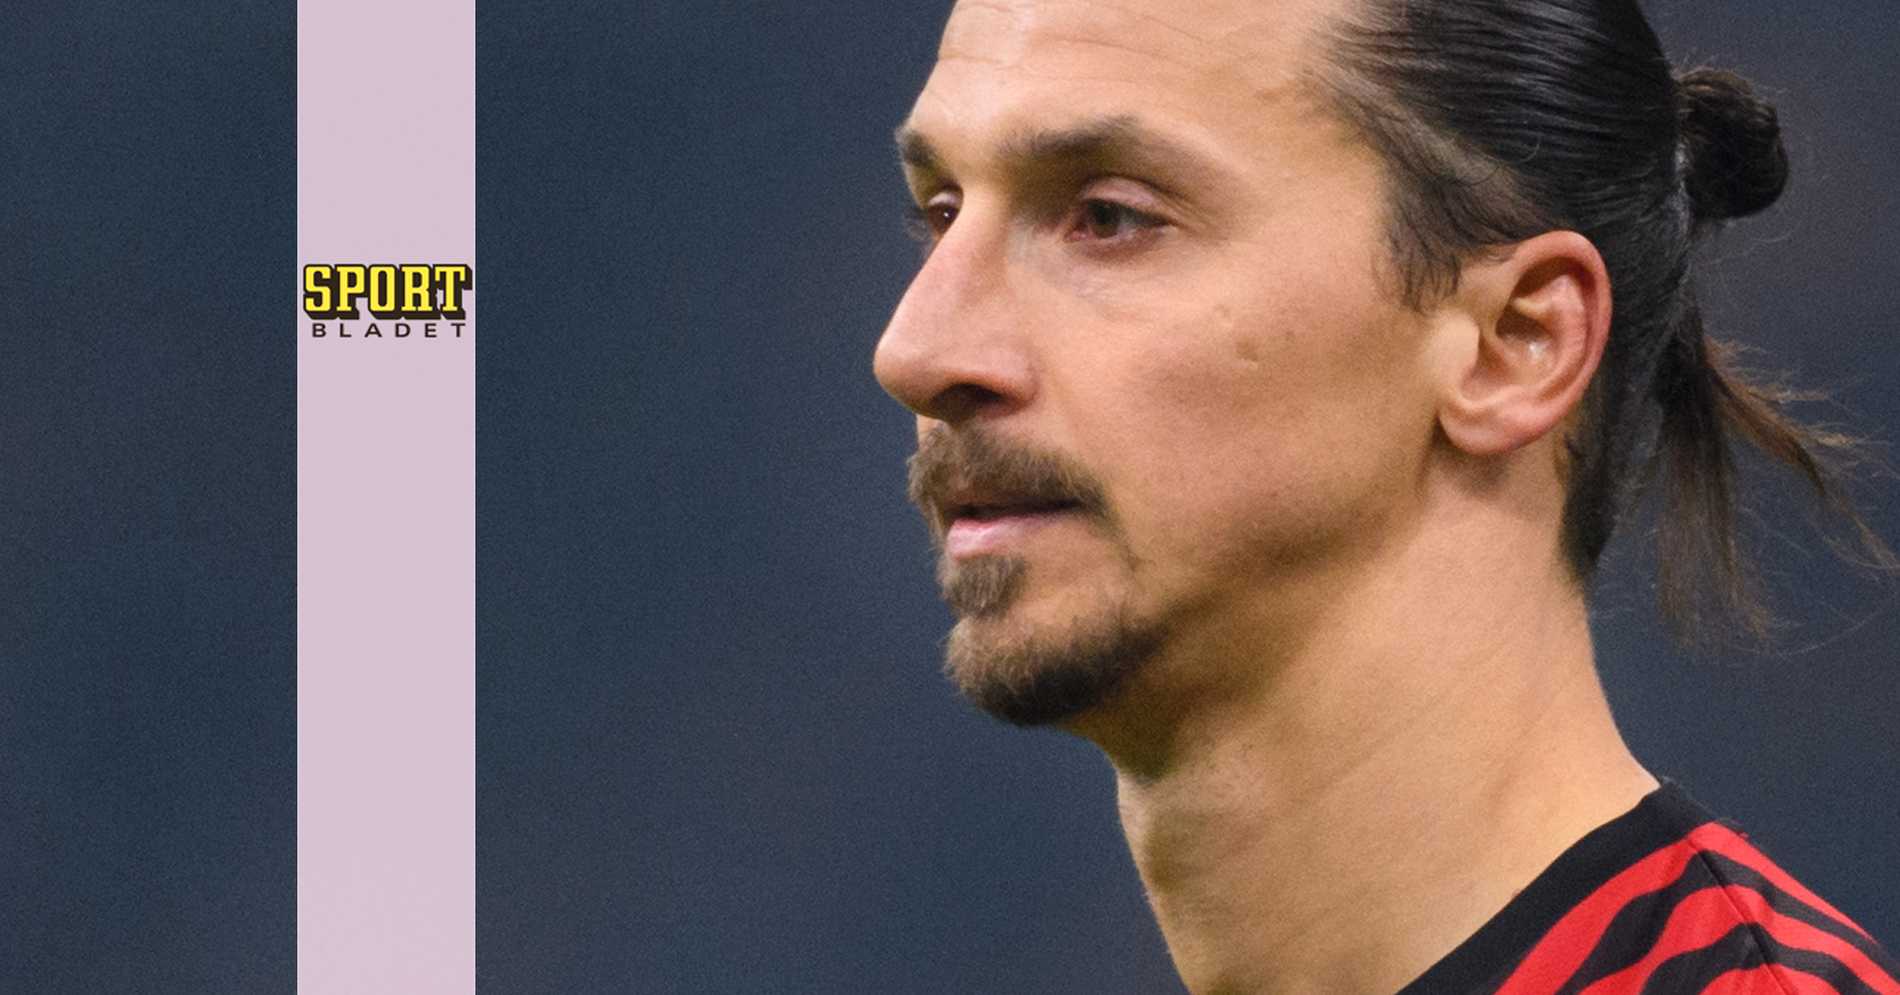 Zlatan tvingas spela inför tomma läktare